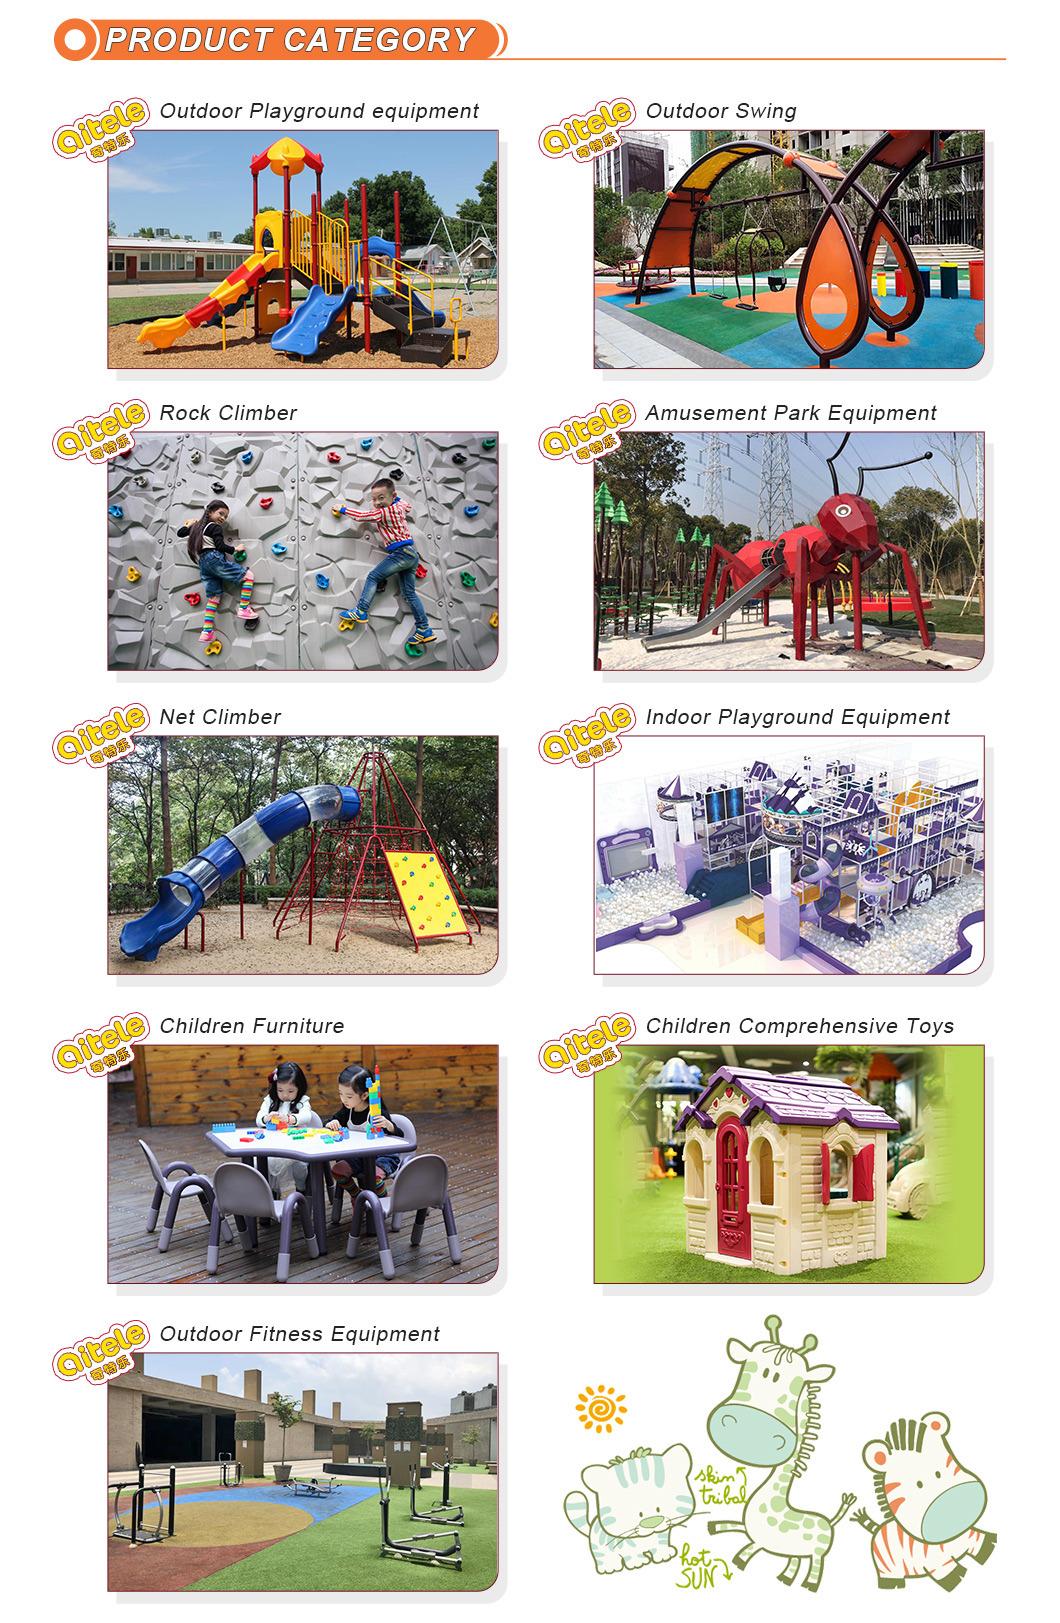 Children Plastic Outdoor Playground, Low Price Creative Design Kids Slides